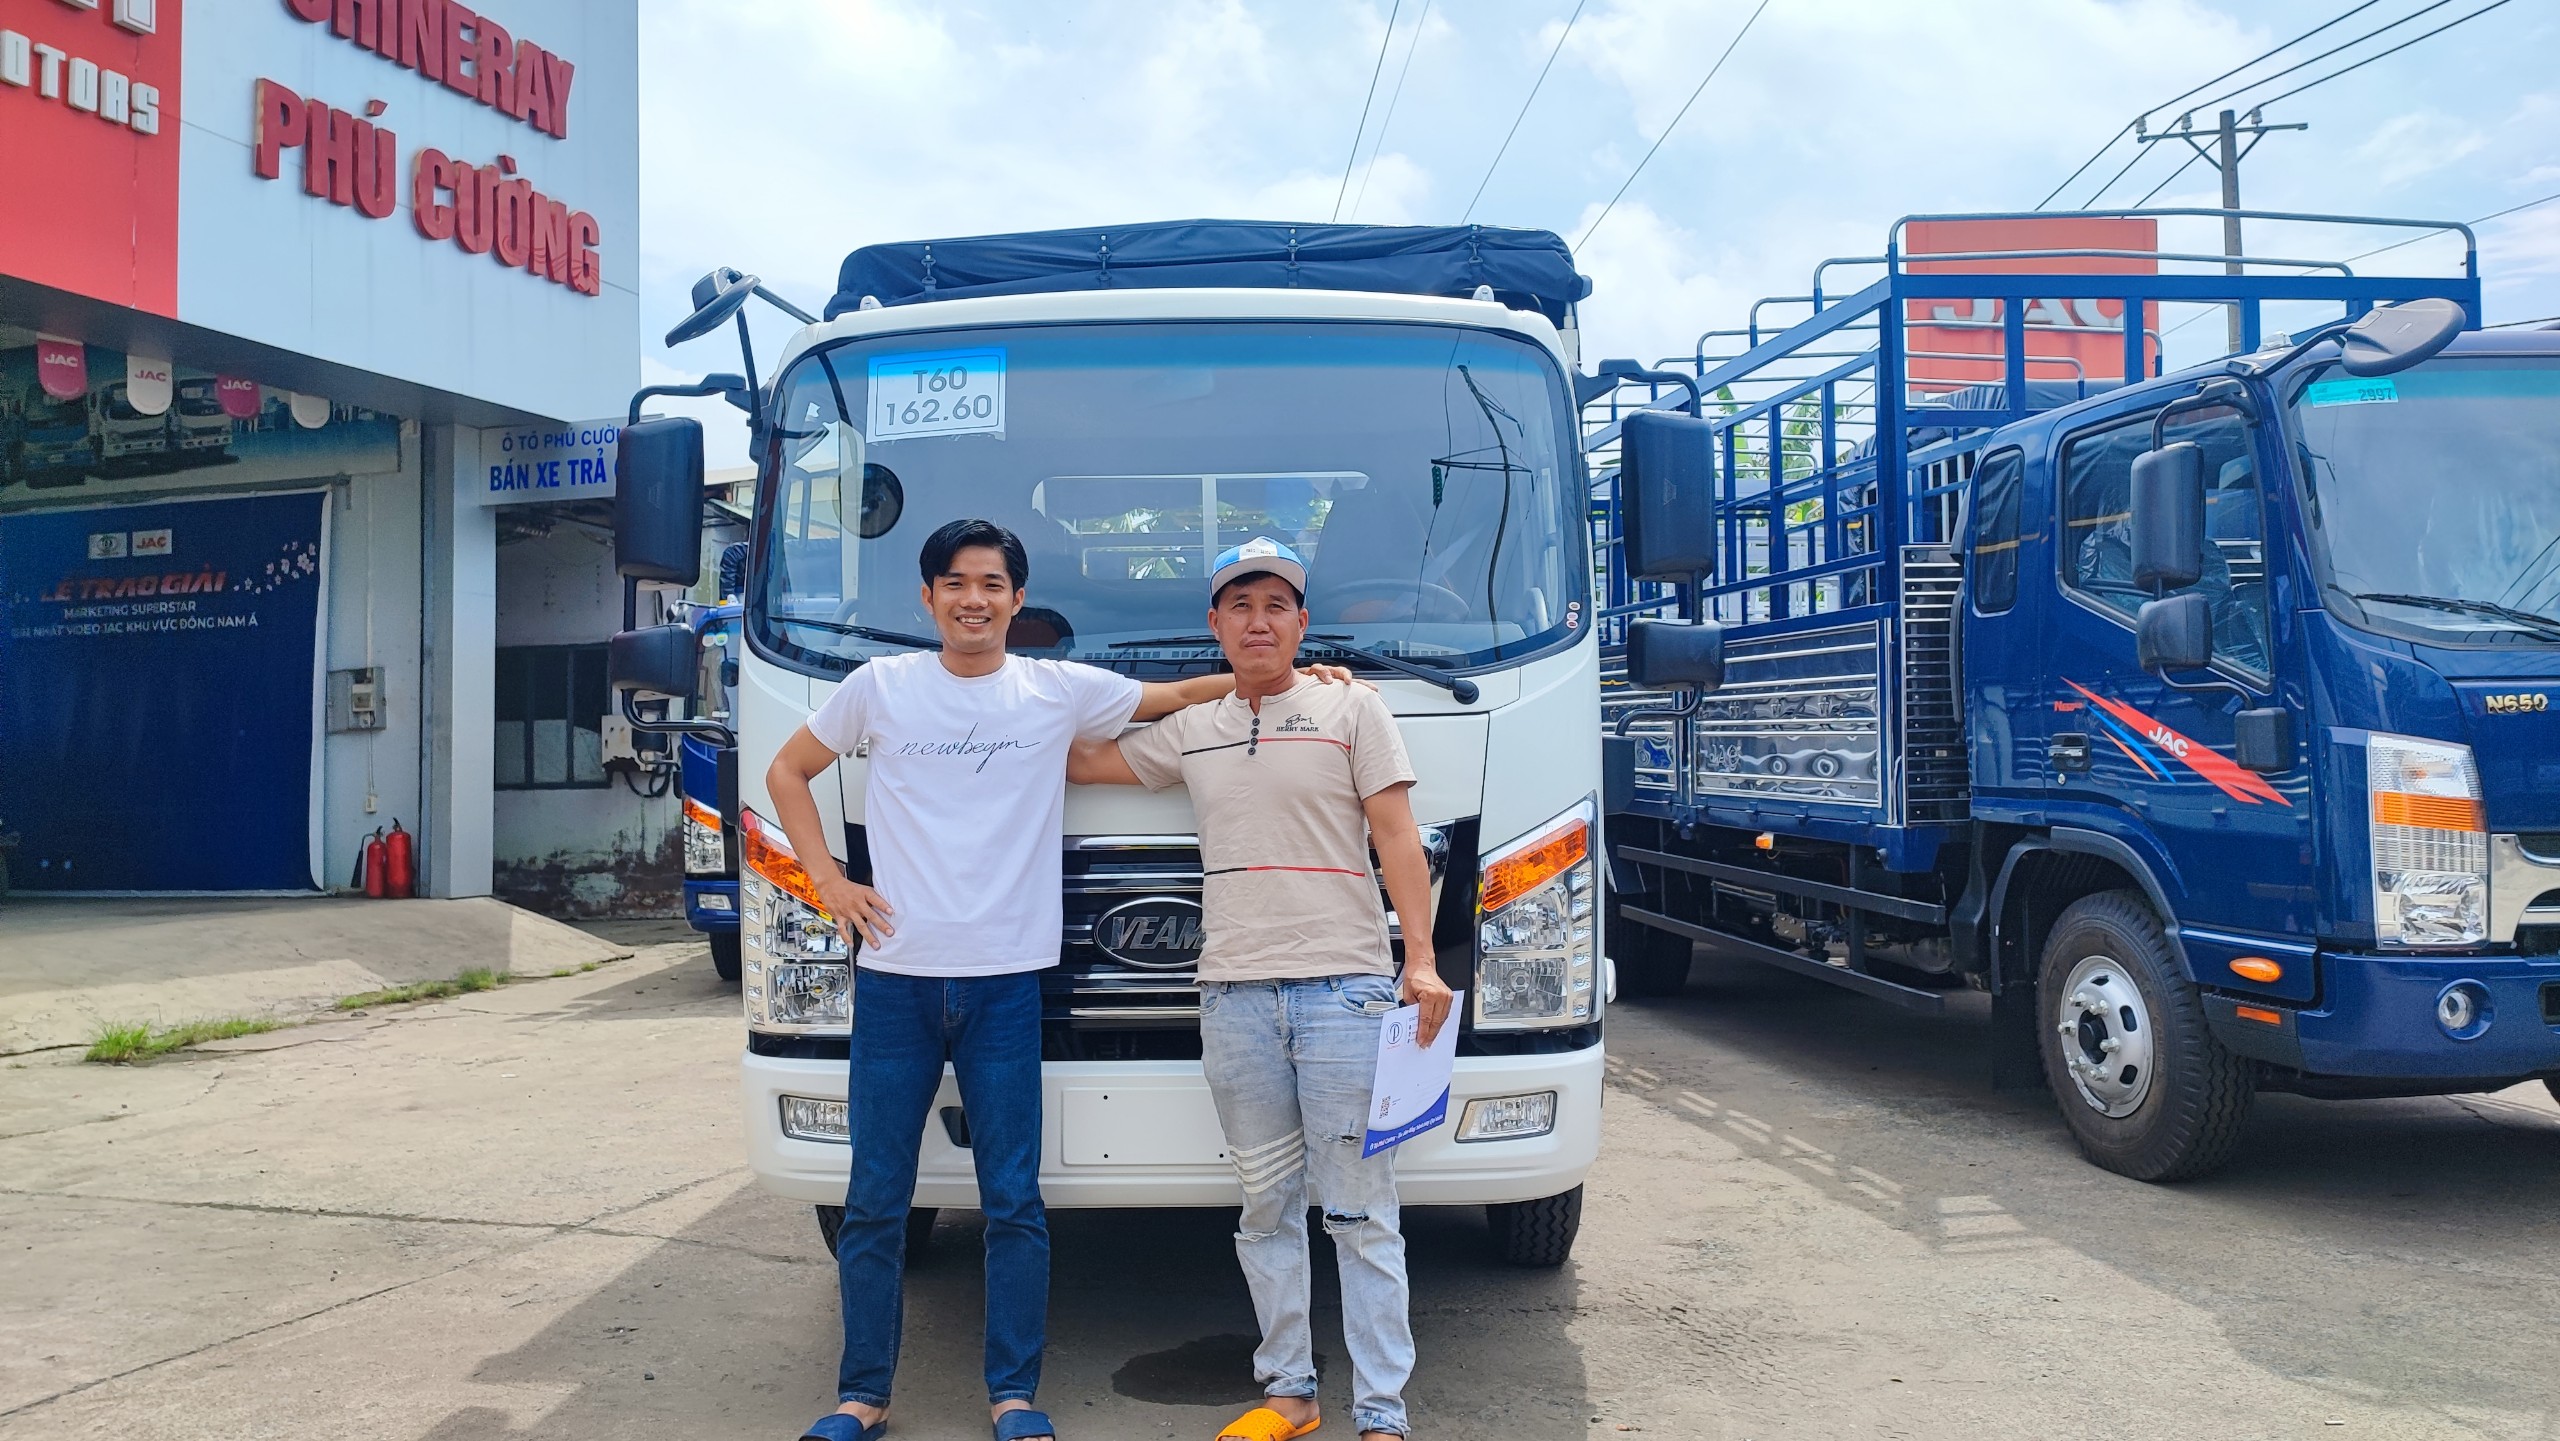 Gia đình anh Ngọc ở Hà Tây “An tâm làm ăn với xe tải veam ở Phú Cường"